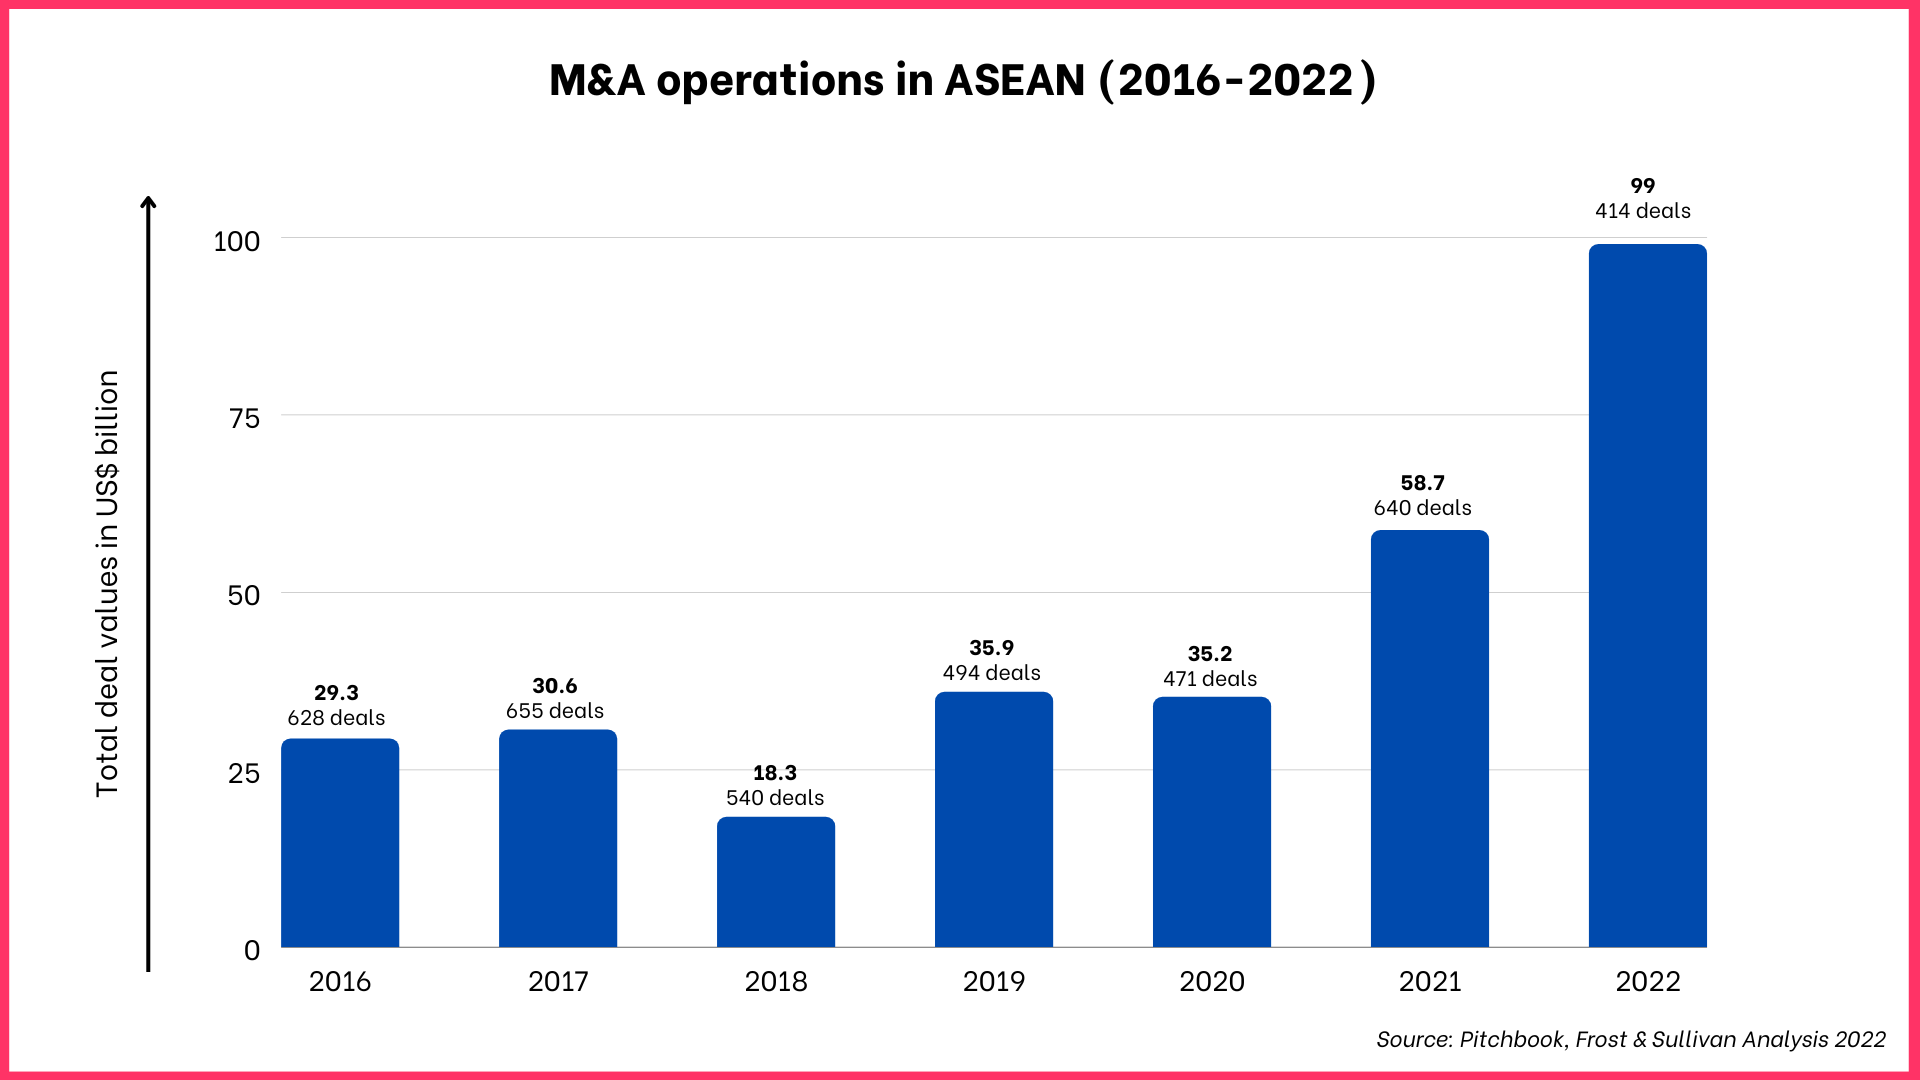 Aperçu du marché des fusions et acquisitions dans l’ASEAN et au Vietnam